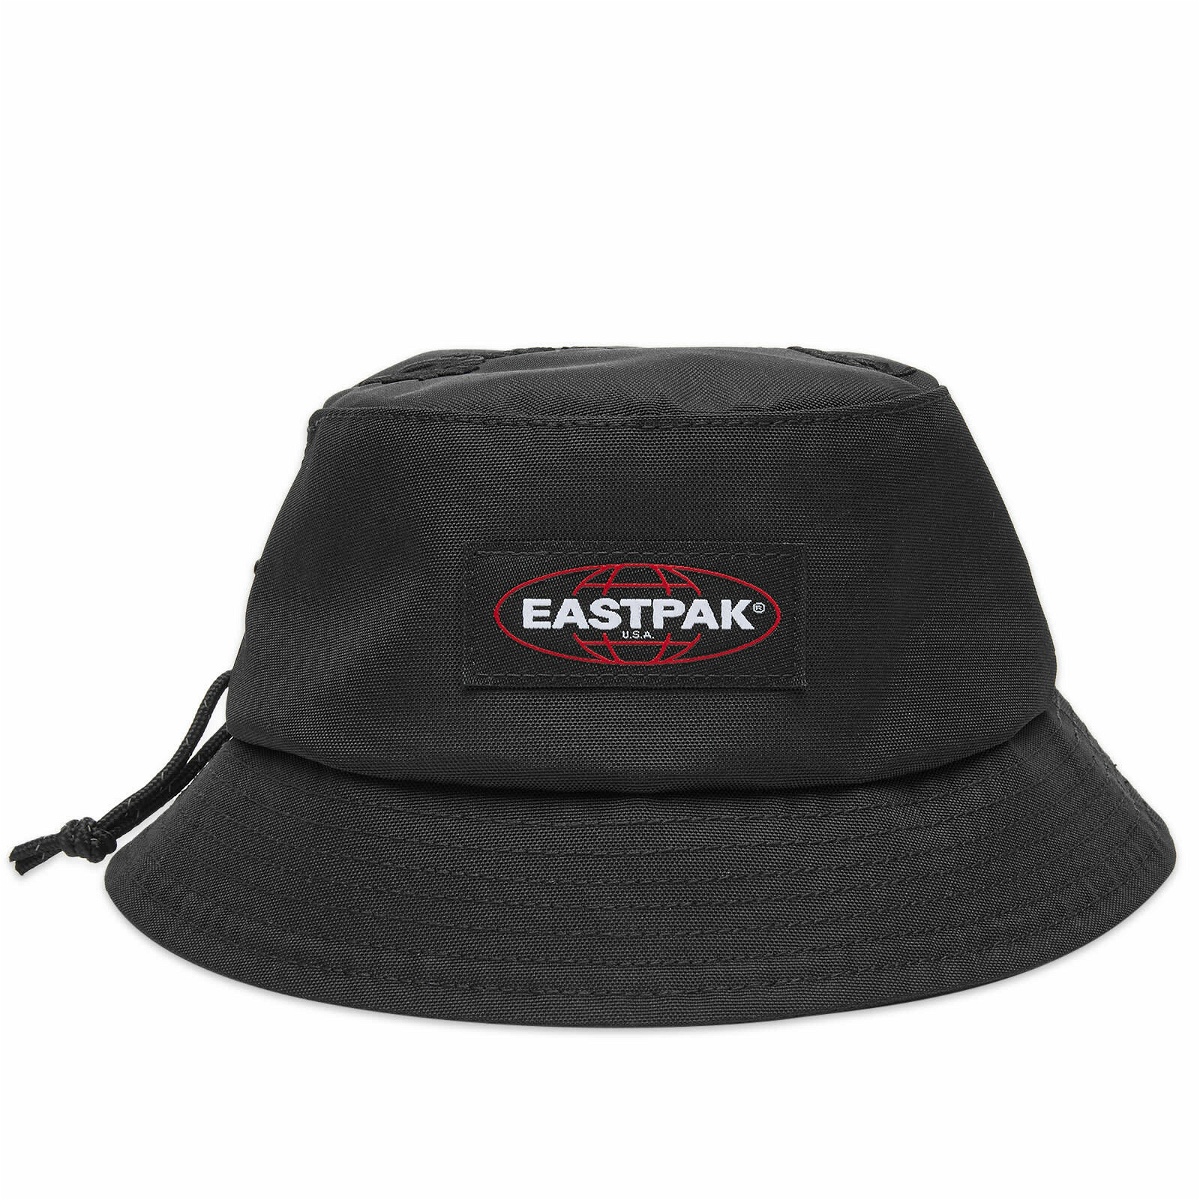 Eastpak x Pleasures Bucket Hat Crossbody Bag in Black Eastpak